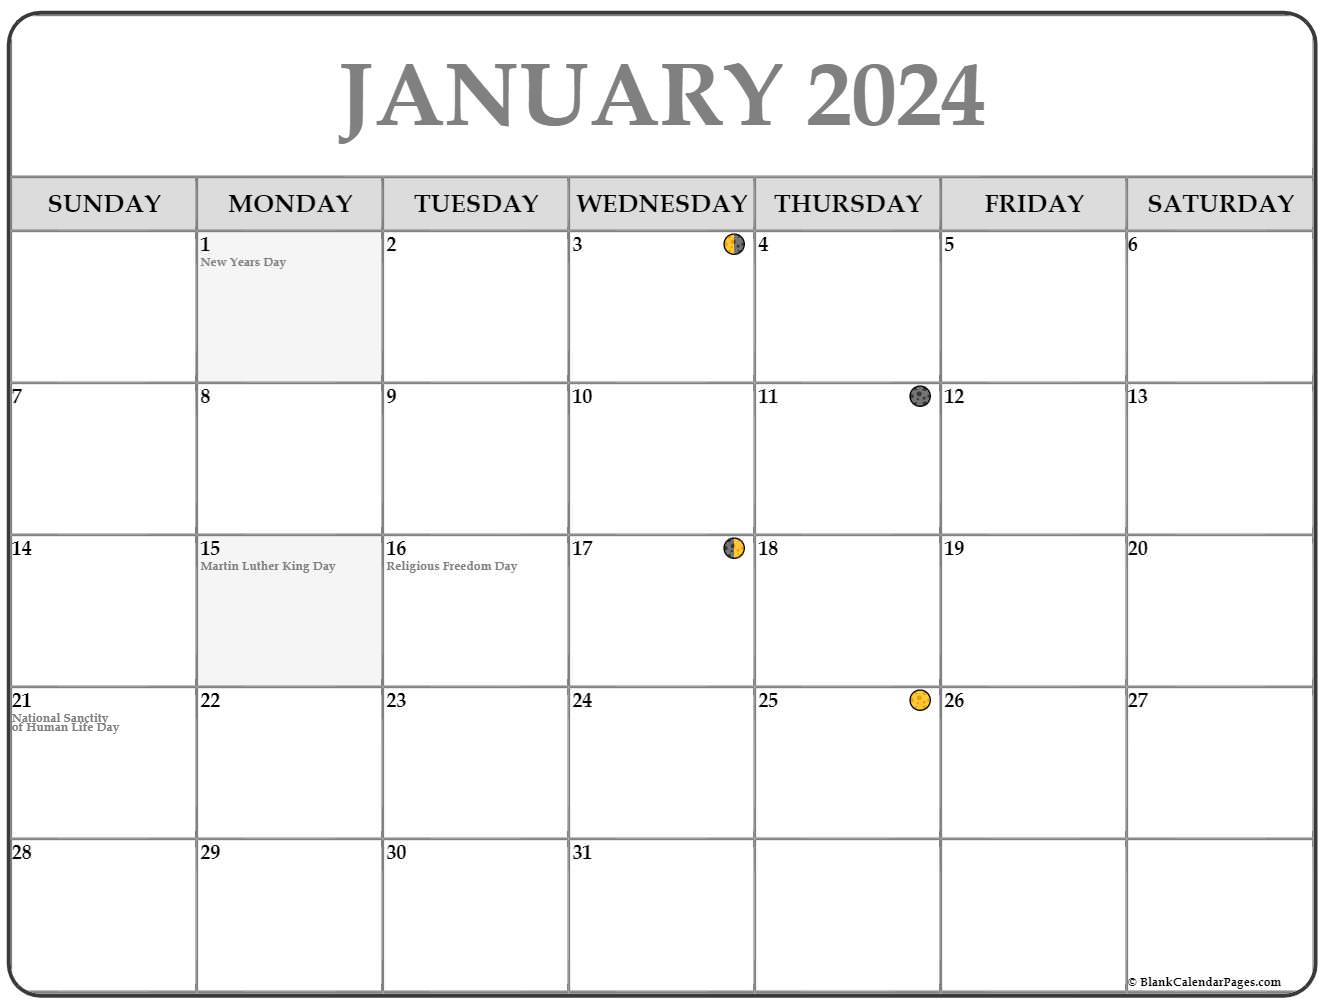 Moon Calendar January 2022 January 2022 Lunar Calendar | Moon Phase Calendar